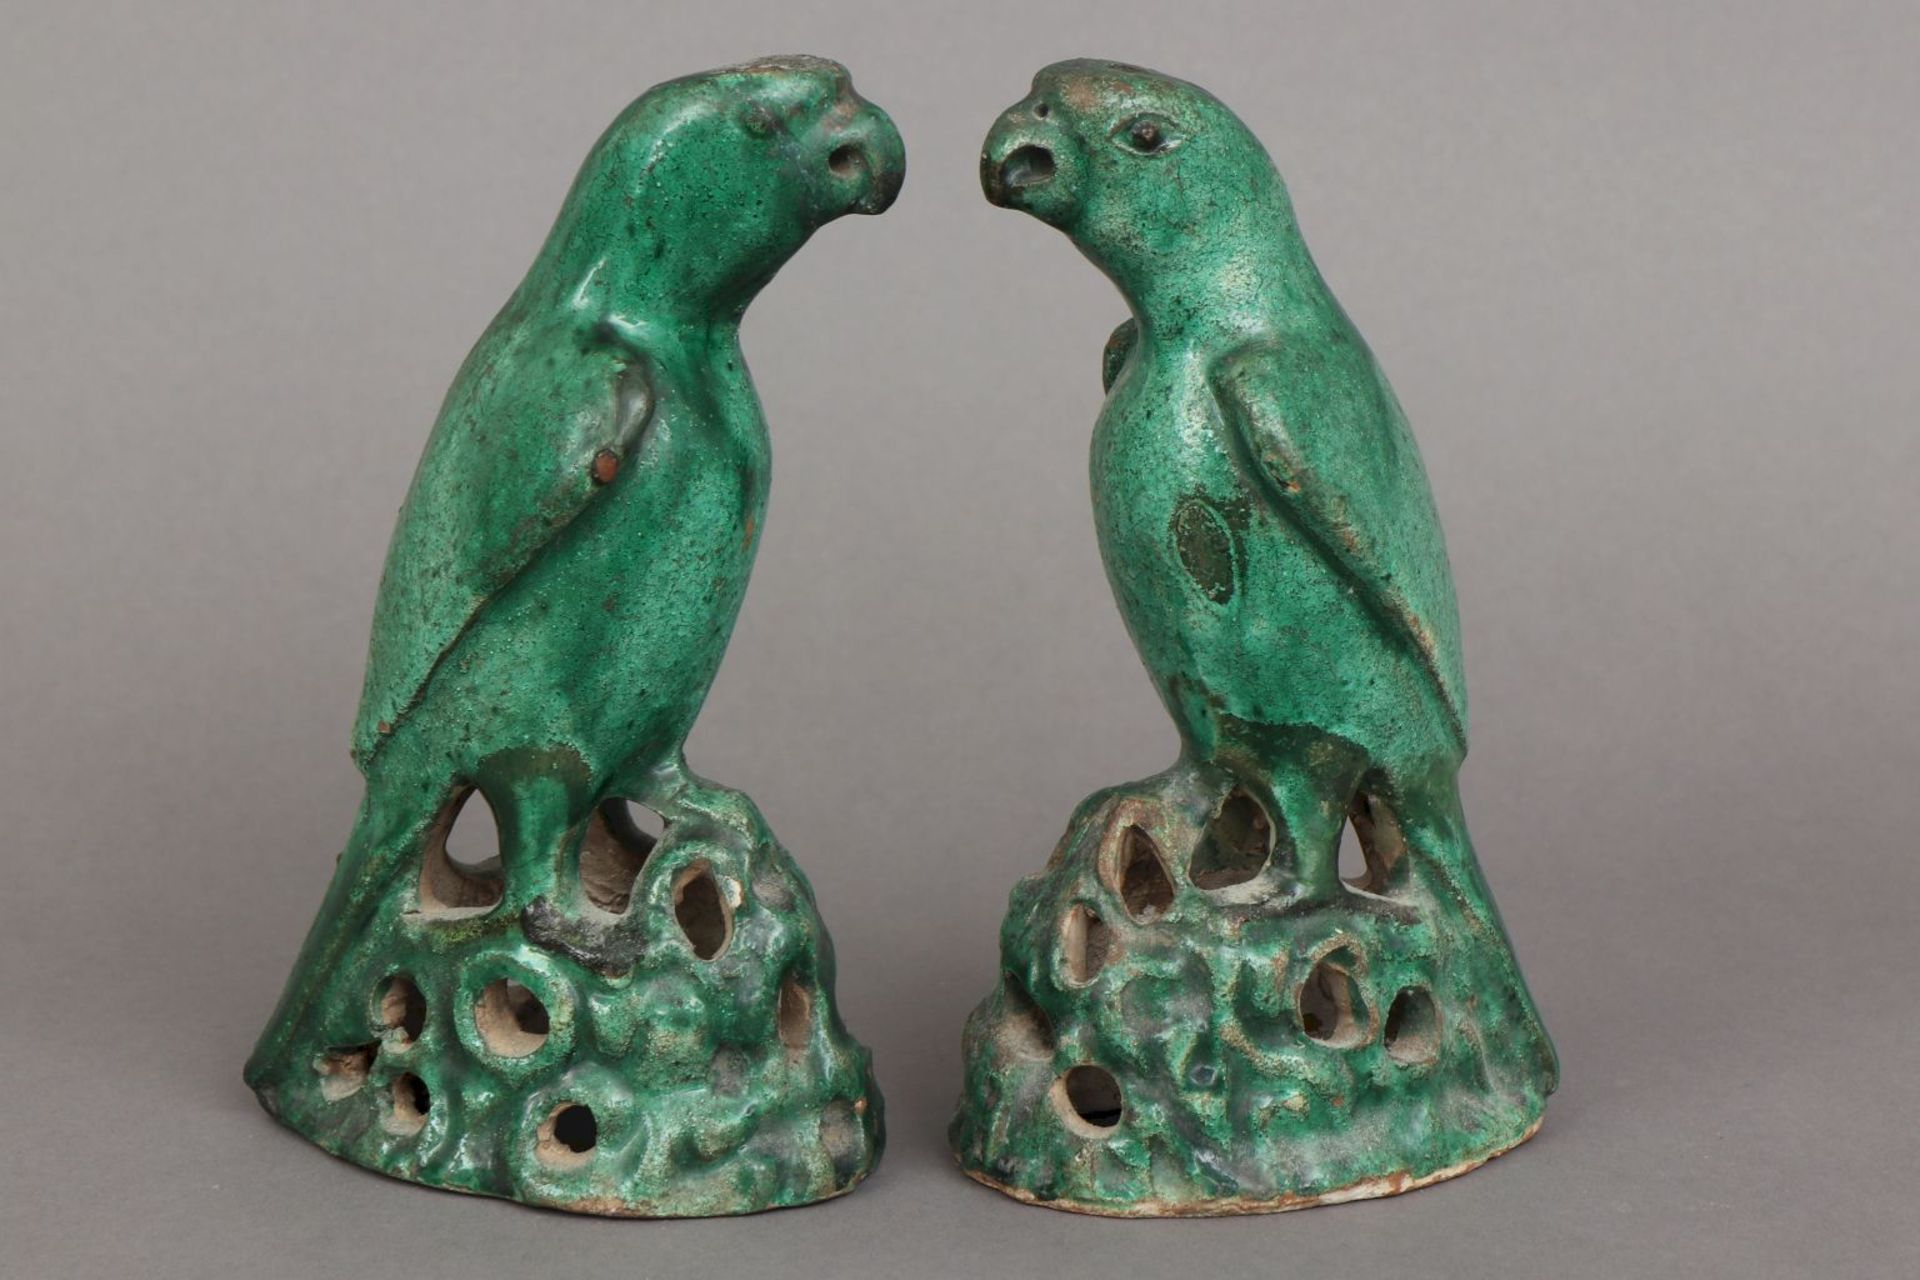 Paar chinesische Porzellanfiguren im Stile der Tang-Dynastie ¨Papageien¨jadegrün glasiert, a